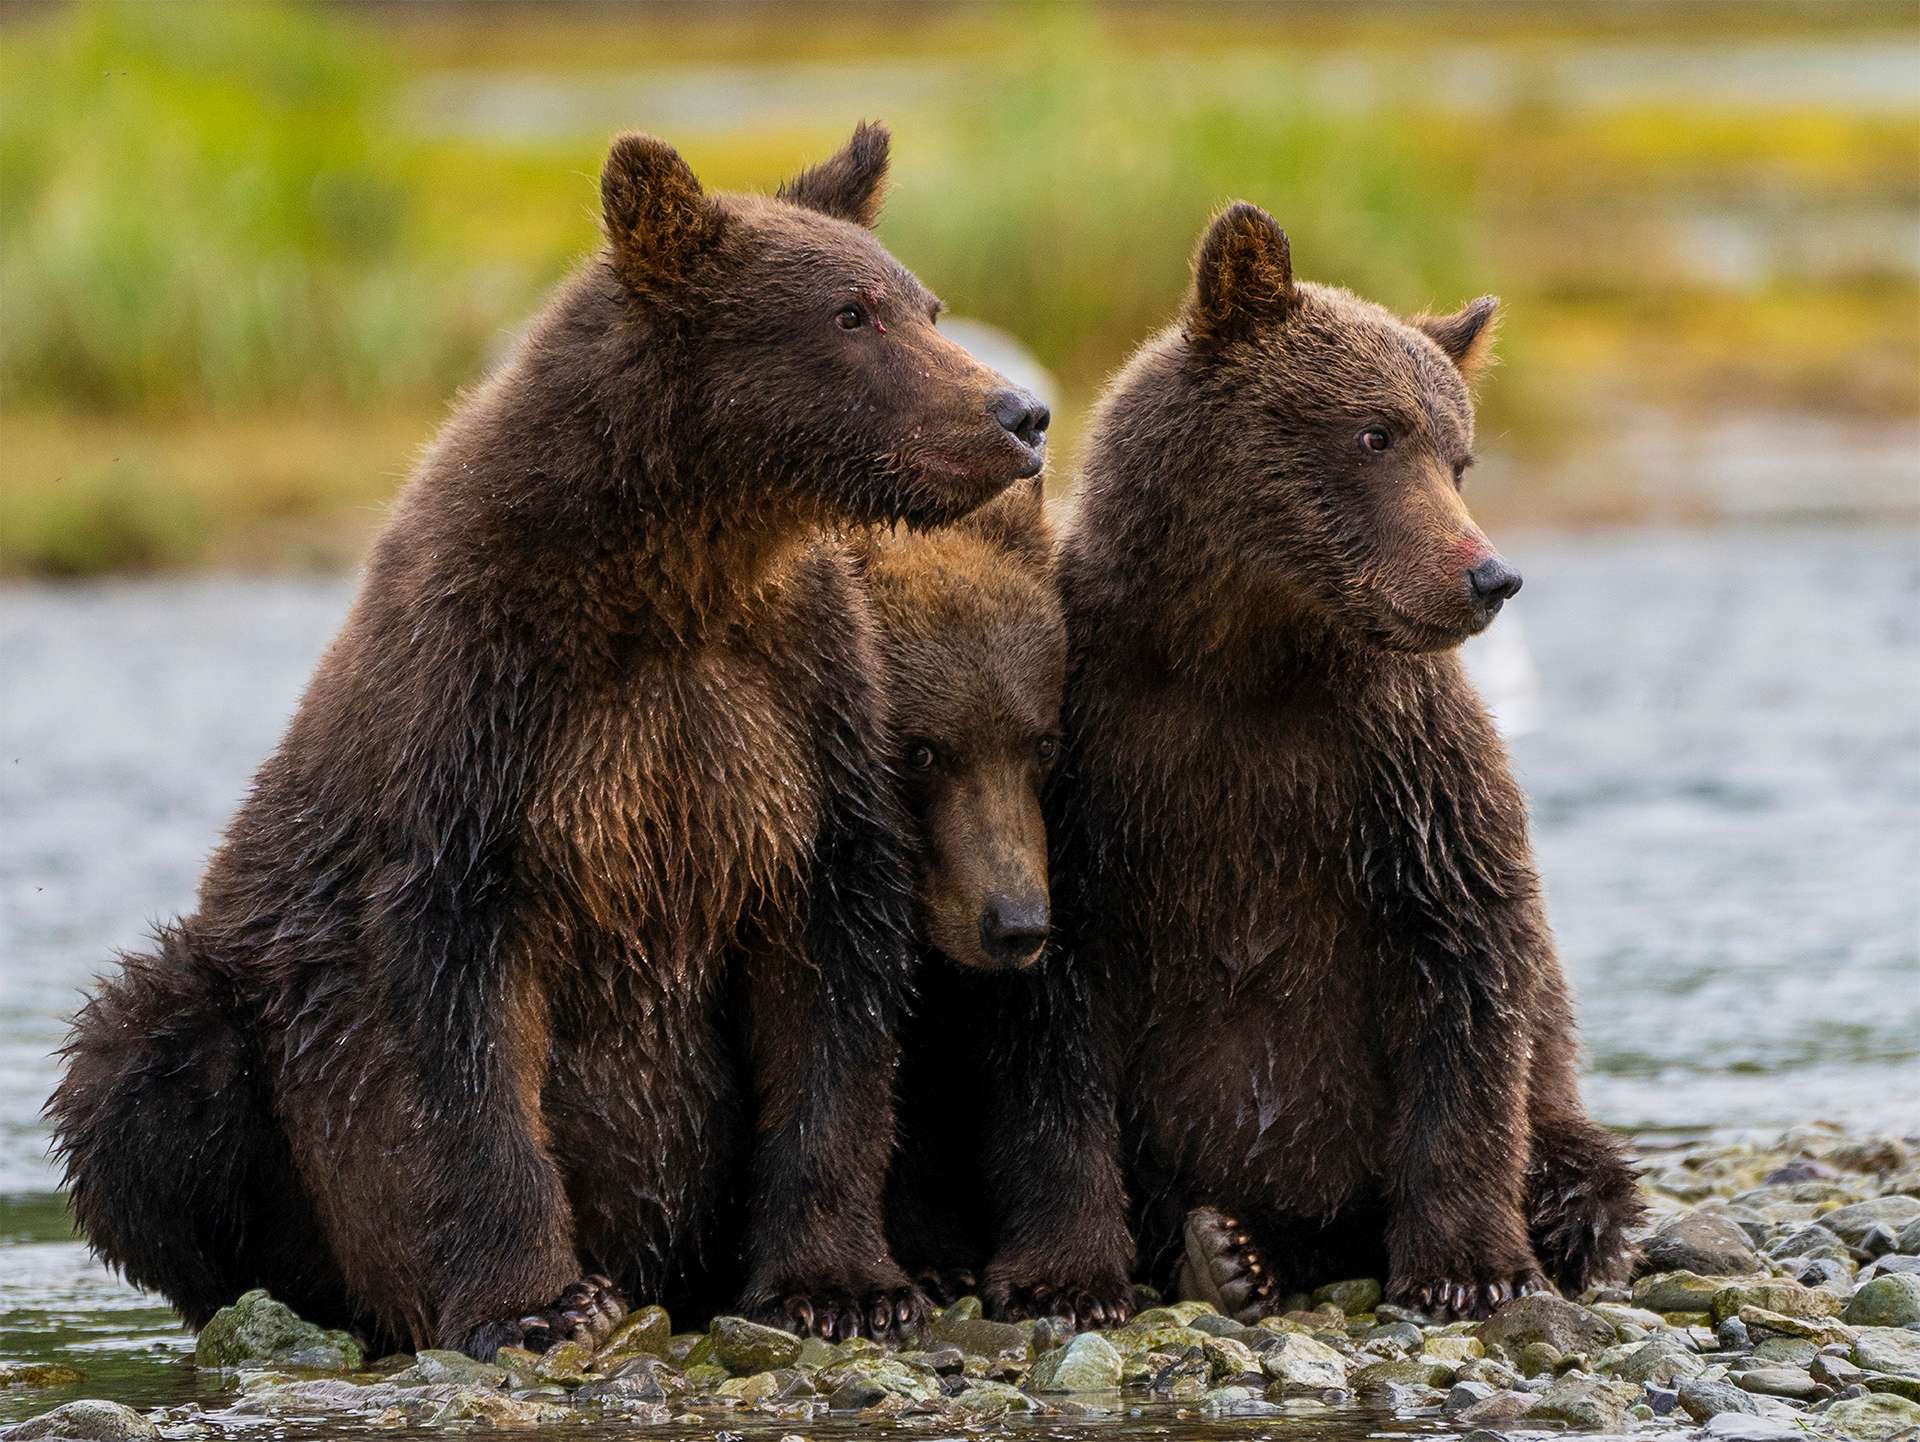 Three grizzly bear brown bear cubs in Alaska Katmai national park 